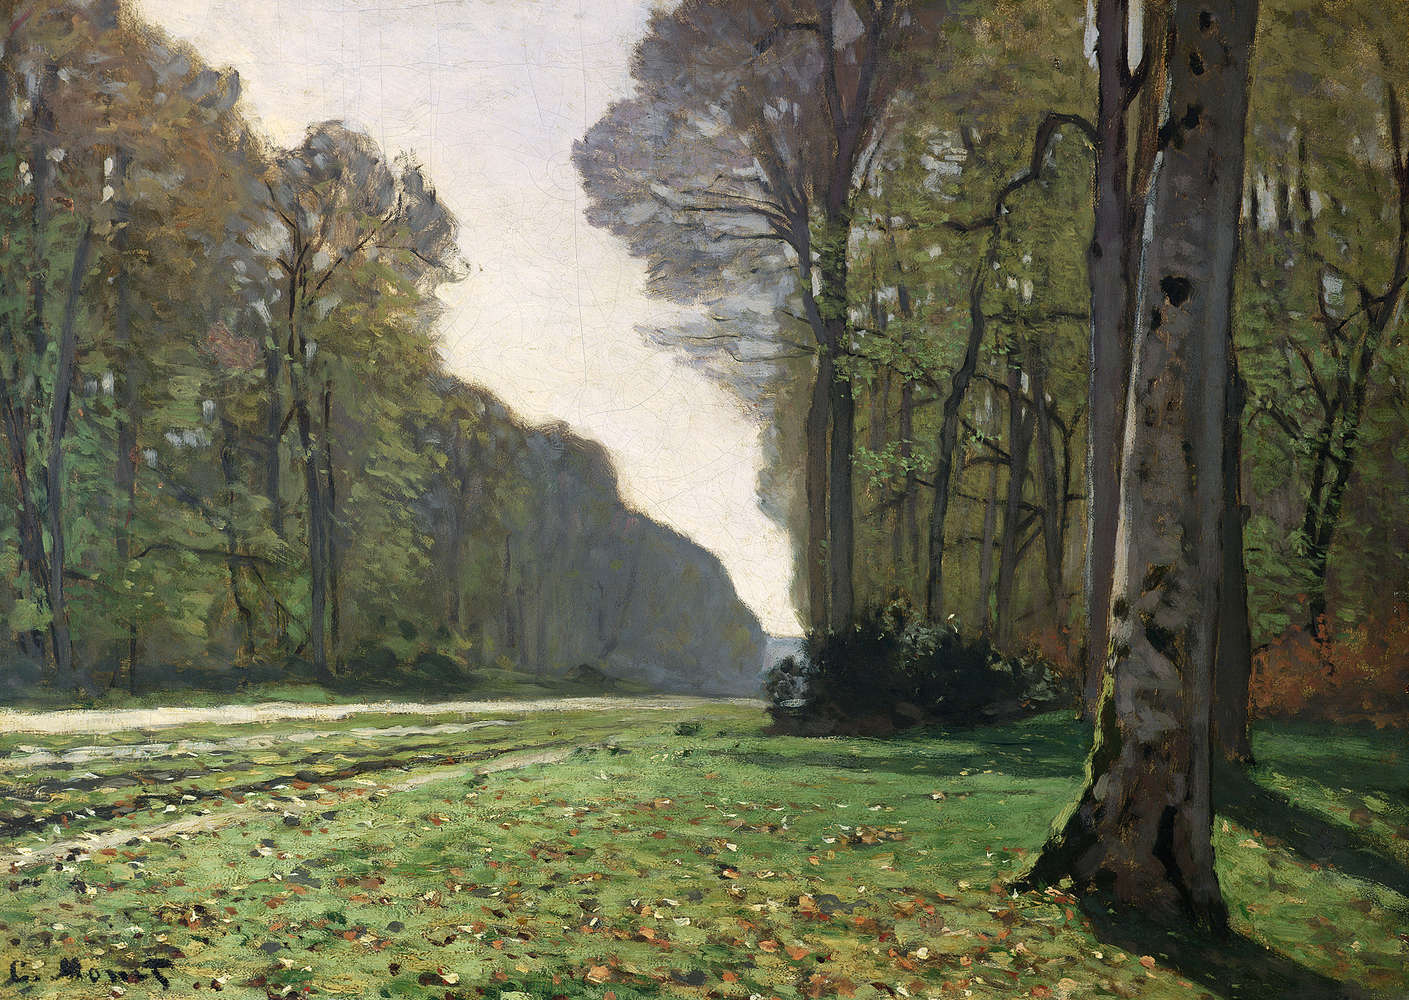             Mural "El camino de BasBreauFontainebleau" de Claude Monet
        